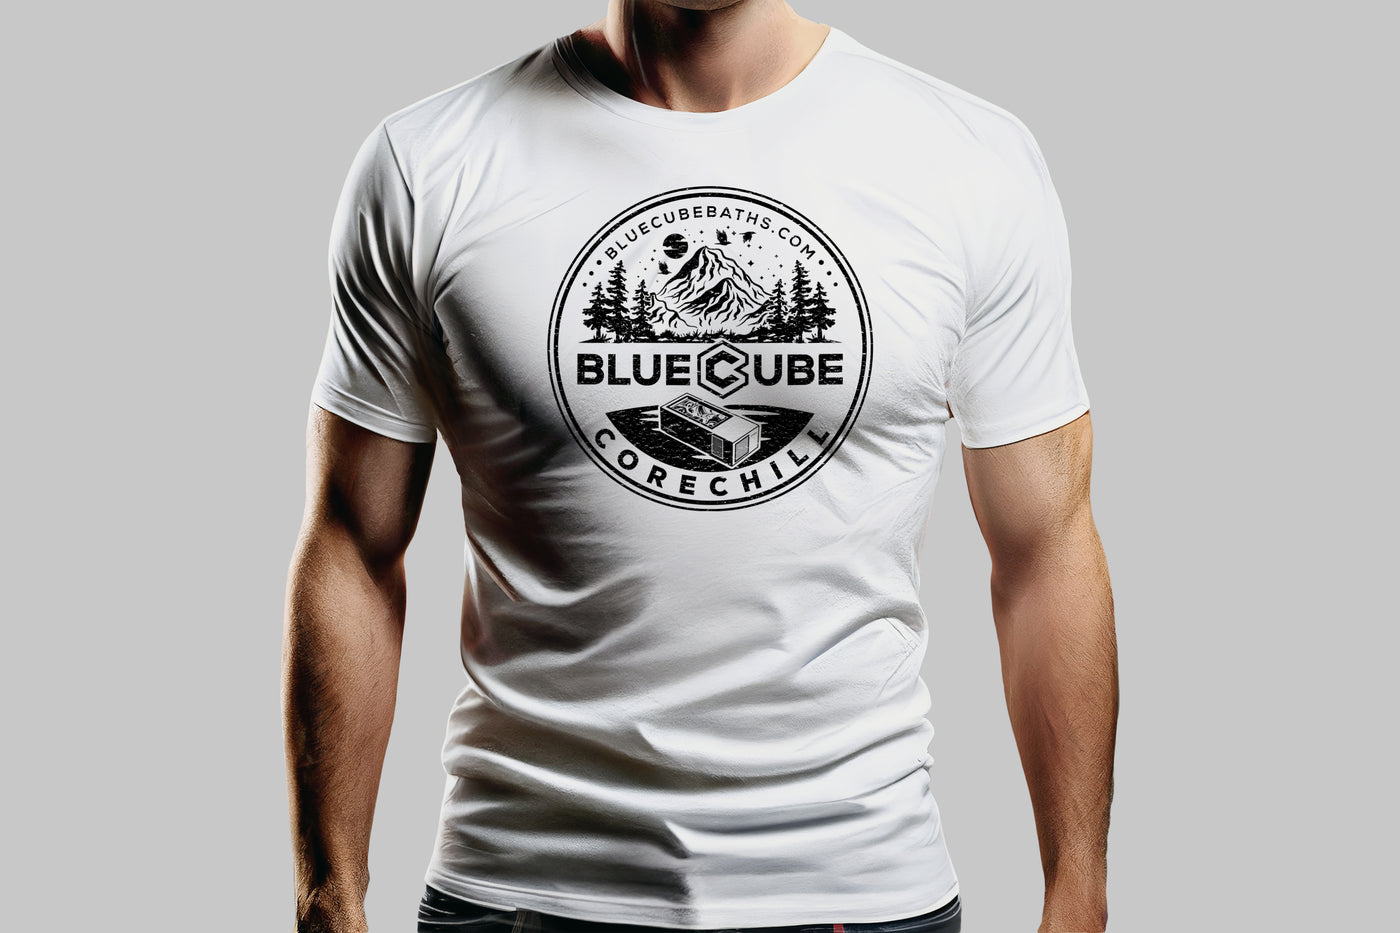 BlueCube CoreChill Cold Plunge Tub T-Shirt_Mockup_White